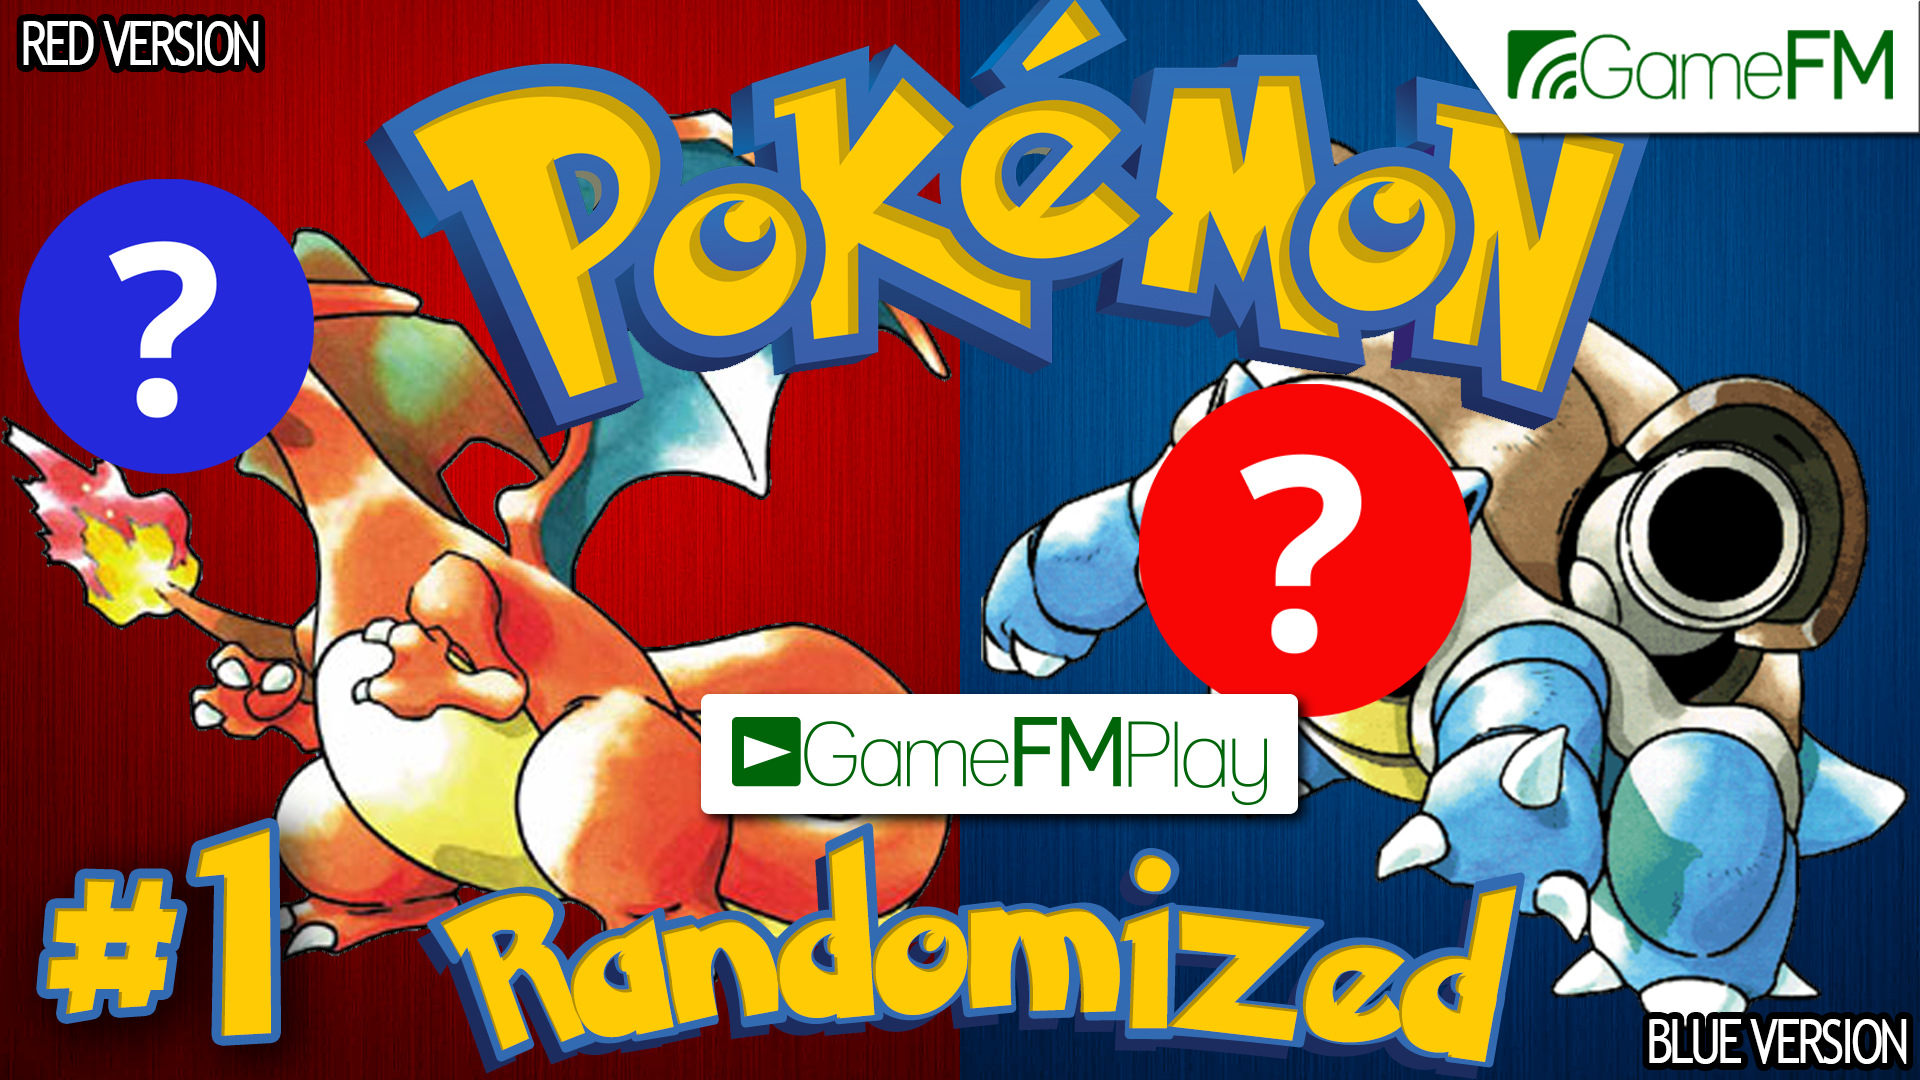 How to Randomize Pokemon Red, Blue & Yellow (Pokemon Randomizer